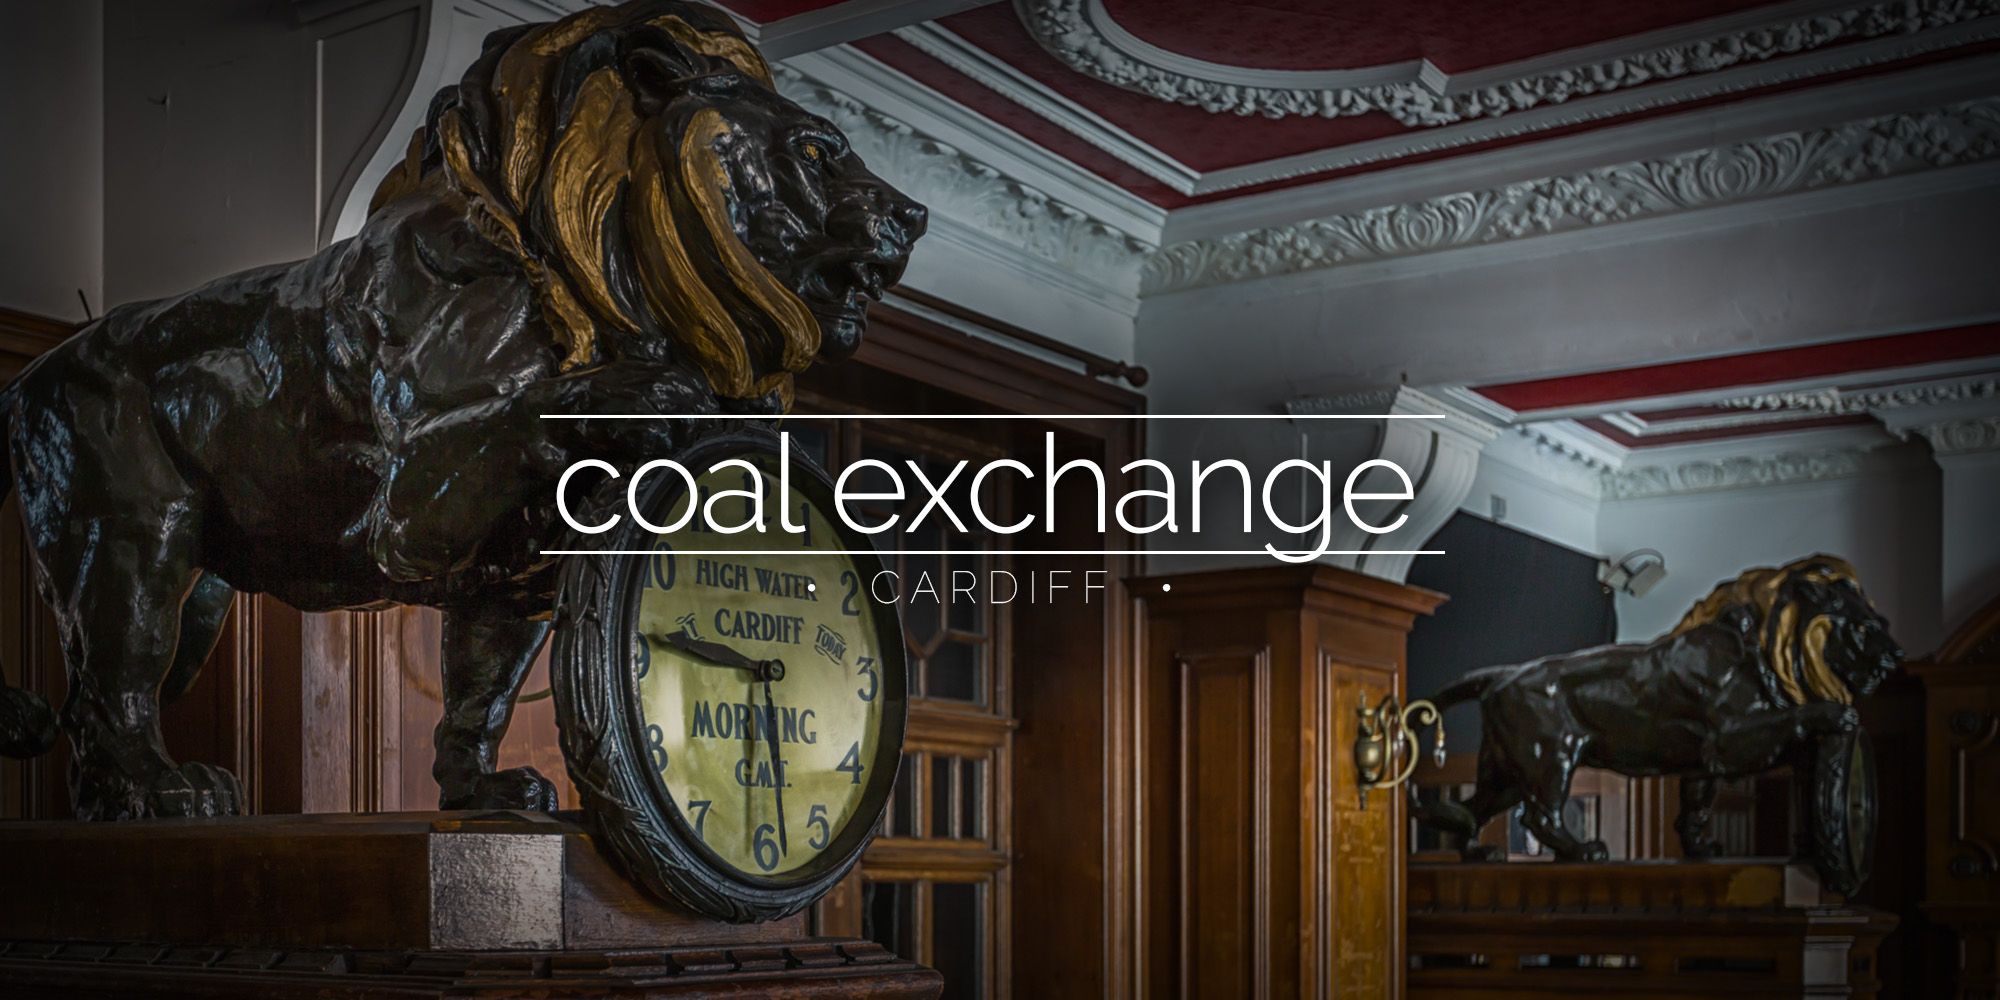 Coal Exchange, Cardiff